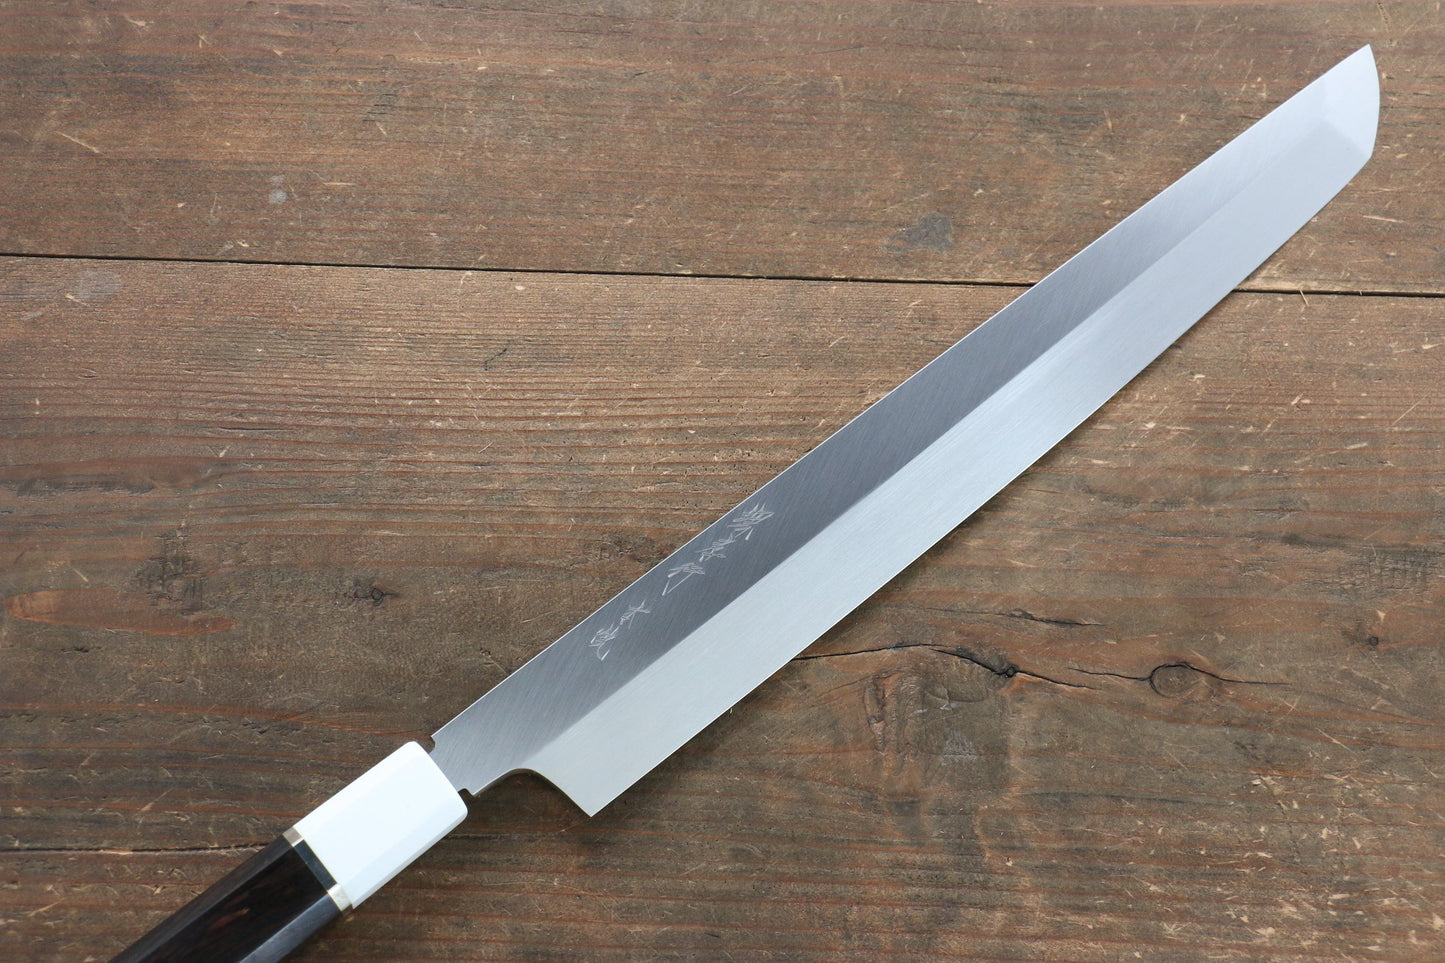 Sakai Takayuki Honyaki Blue Steel No.2 Mirrored Finish Sakimaru Takohiki Japanese Knife 300mm with Ebony with Double Ring Handle with Saya - Japanny - Best Japanese Knife